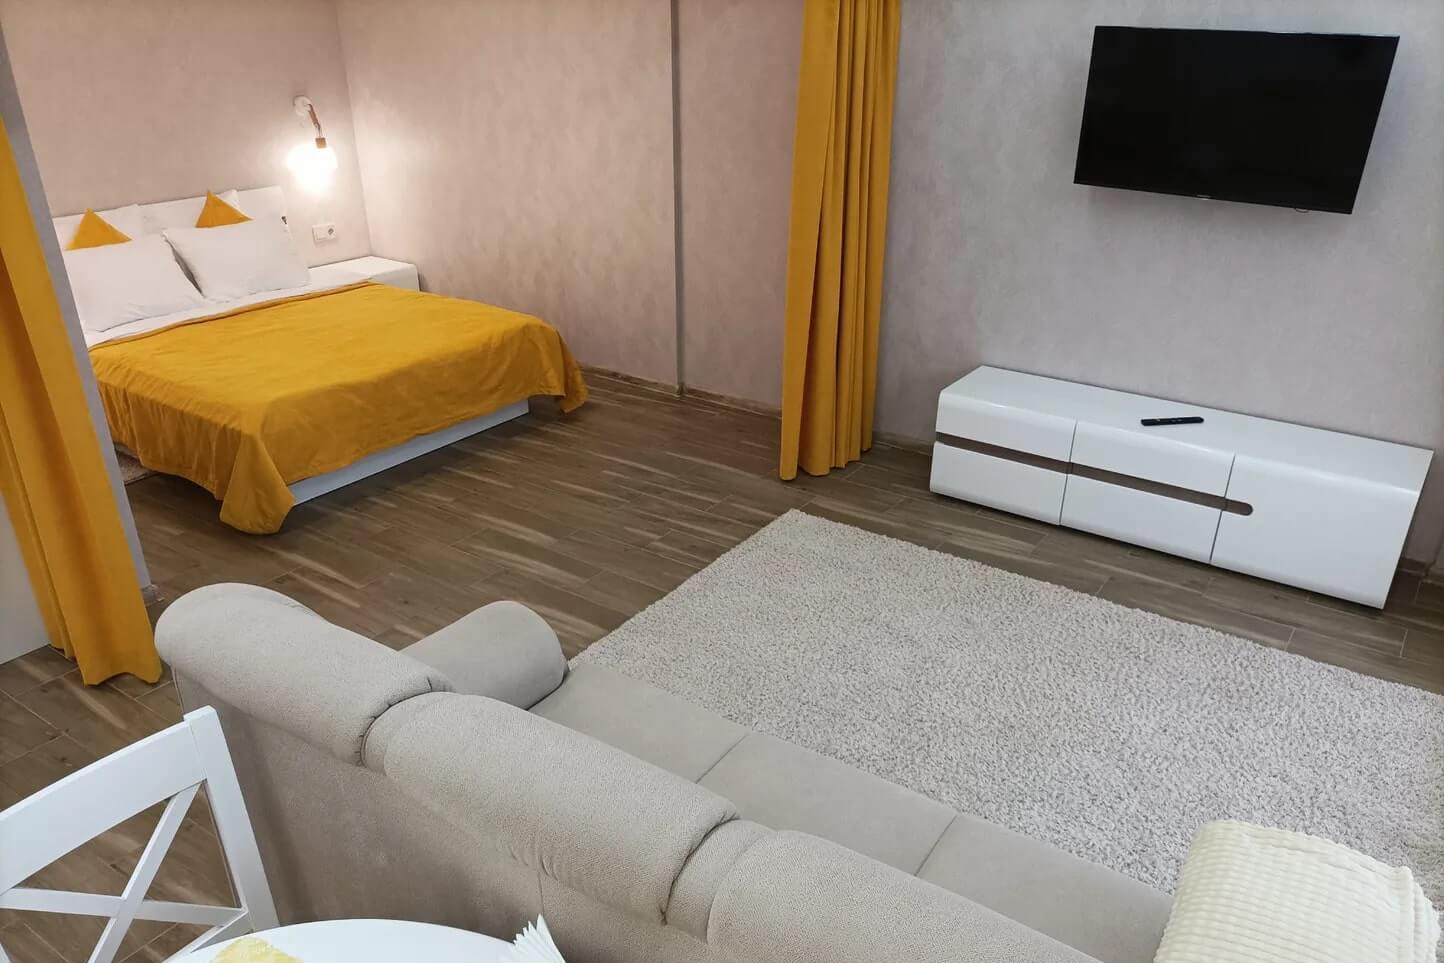 Для визуального ограждения спальни использованы желтые шторки.